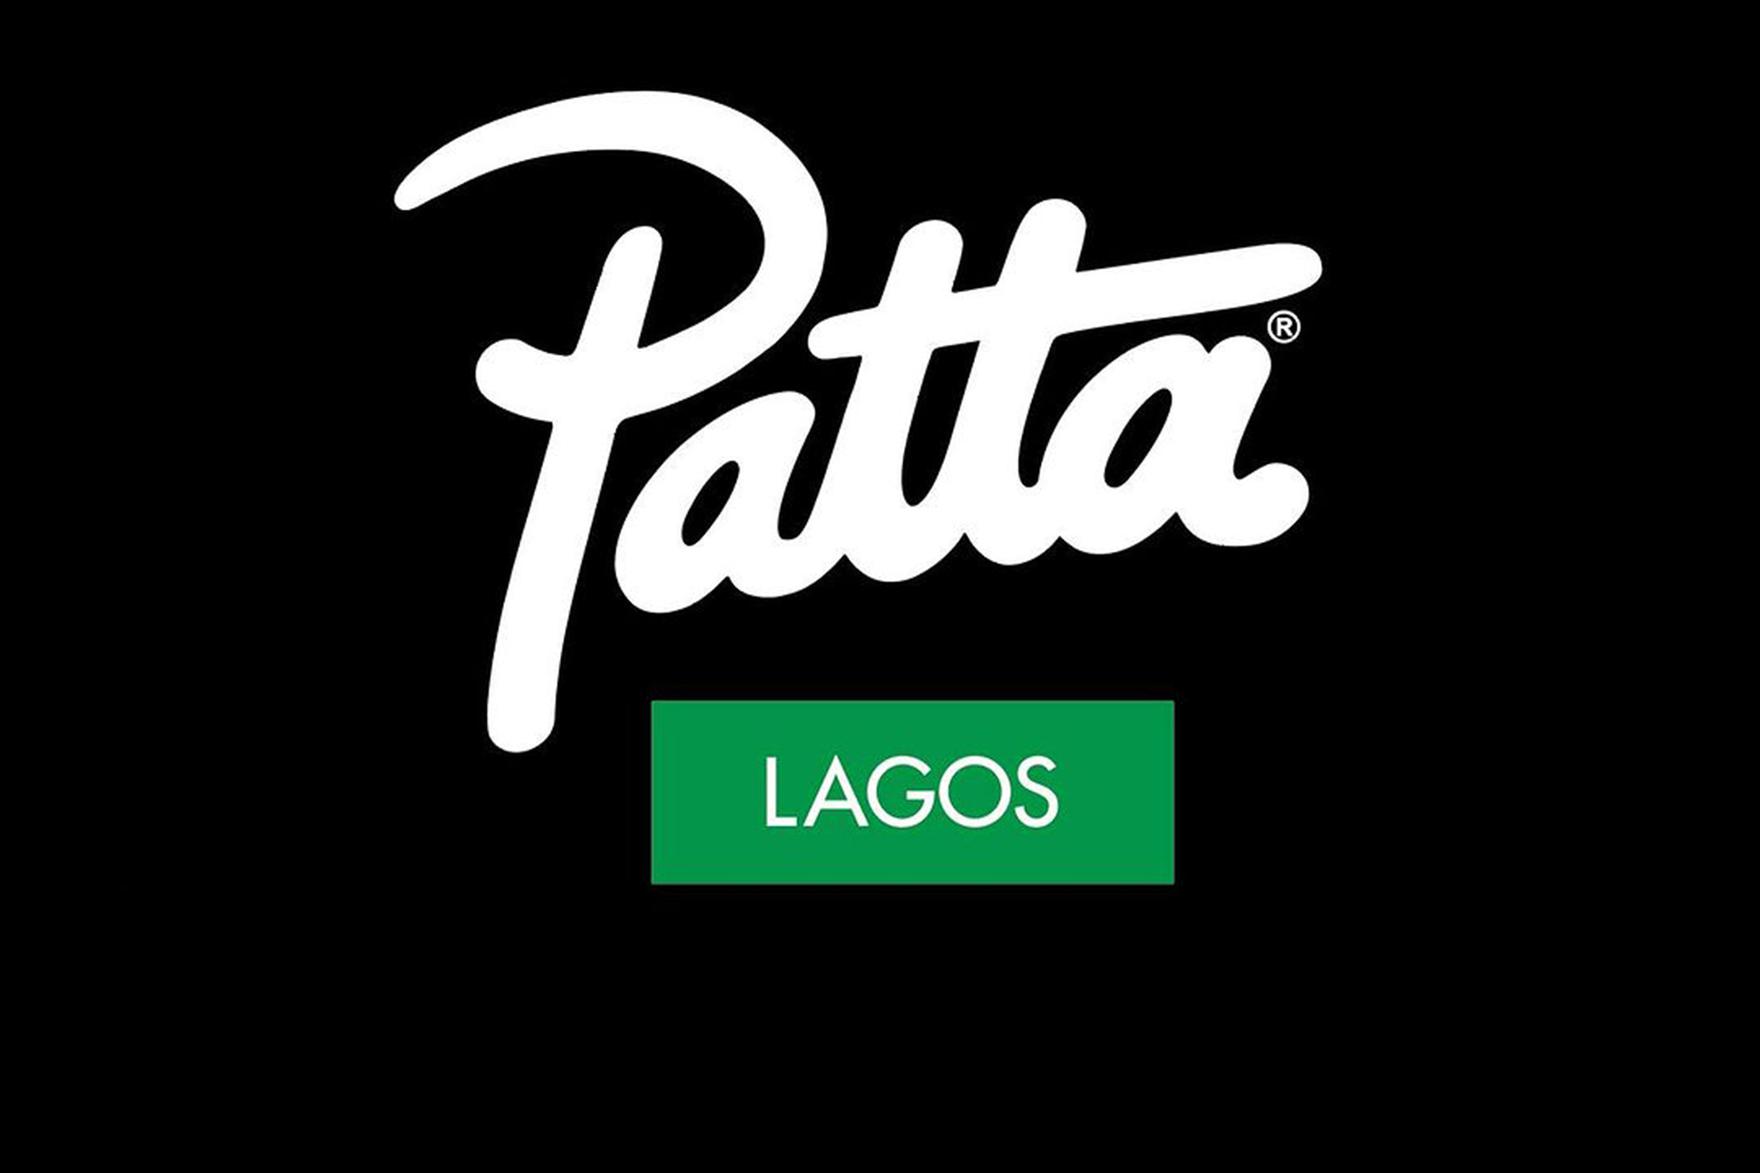 Patta Lagos